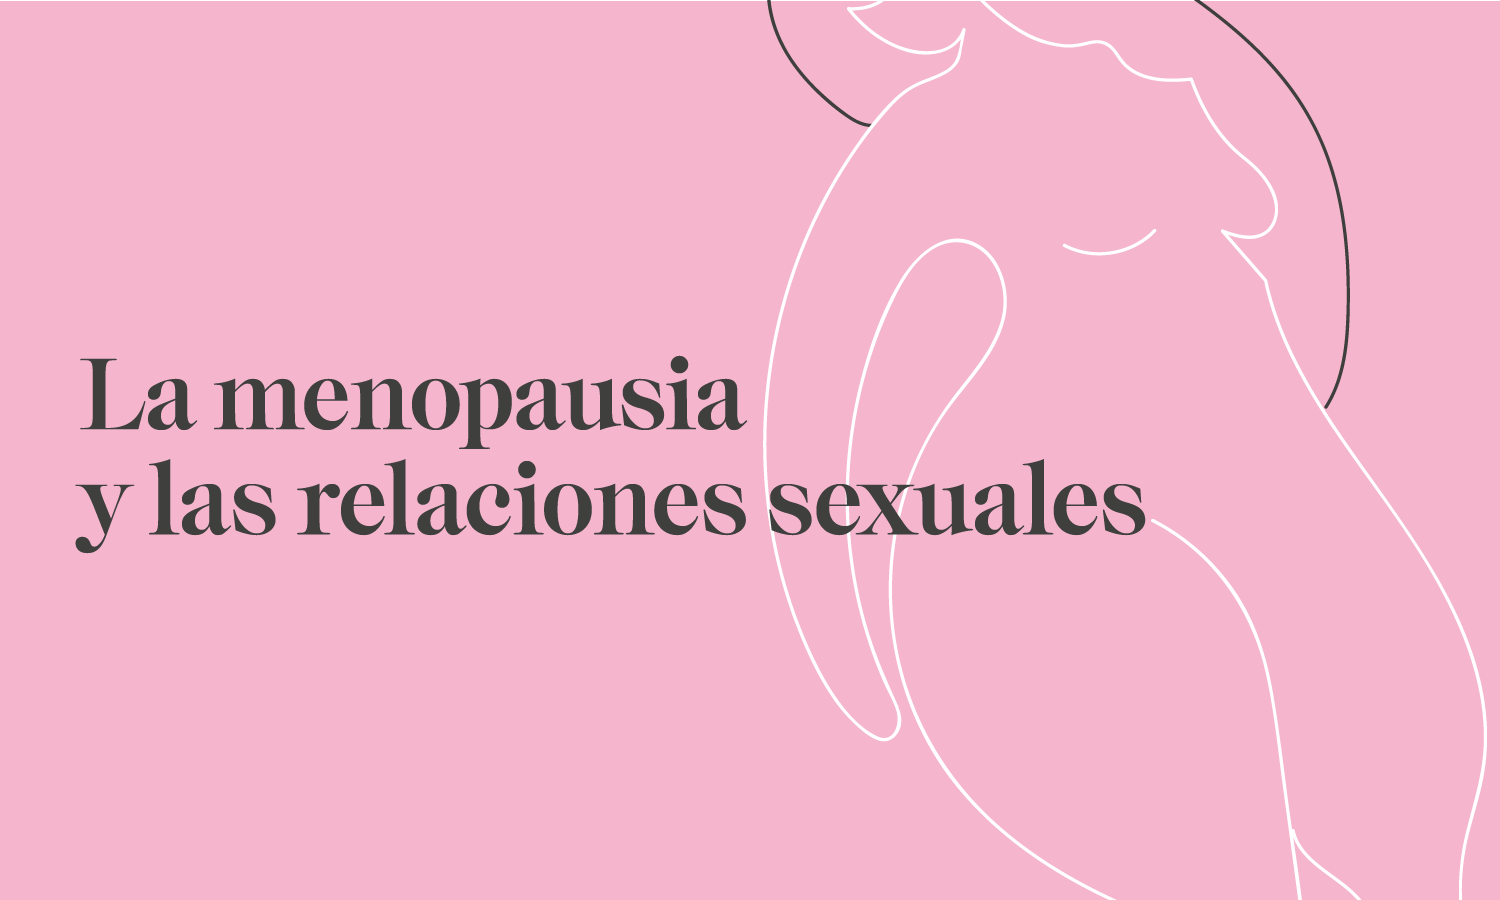 Clinica Sanabria menopausia y relaciones sexuales